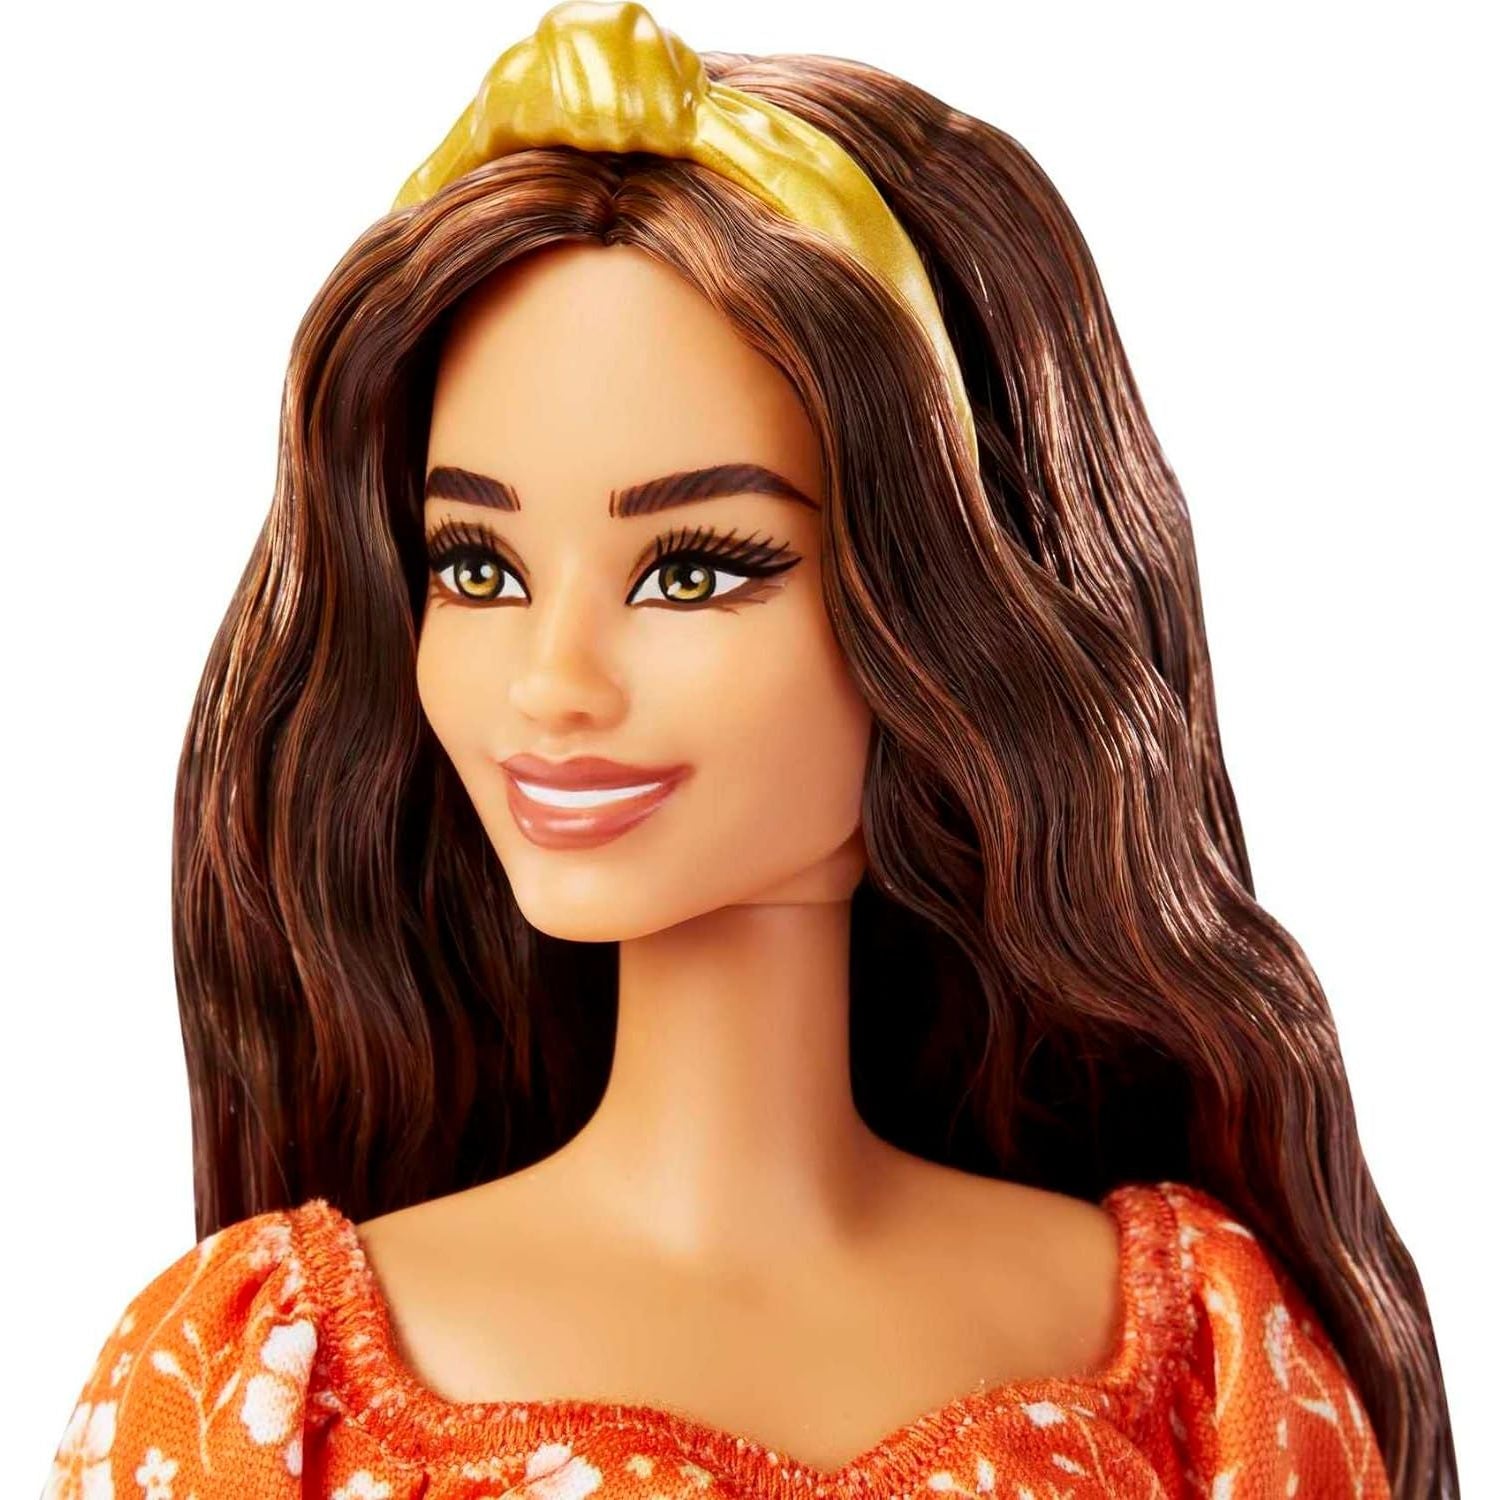 دمية باربي فاشونيستاس، شعر بني طويل مموج، عصابة رأس، فستان برتقالي بطبعة زهور مع تفاصيل مكشكشة وكعب